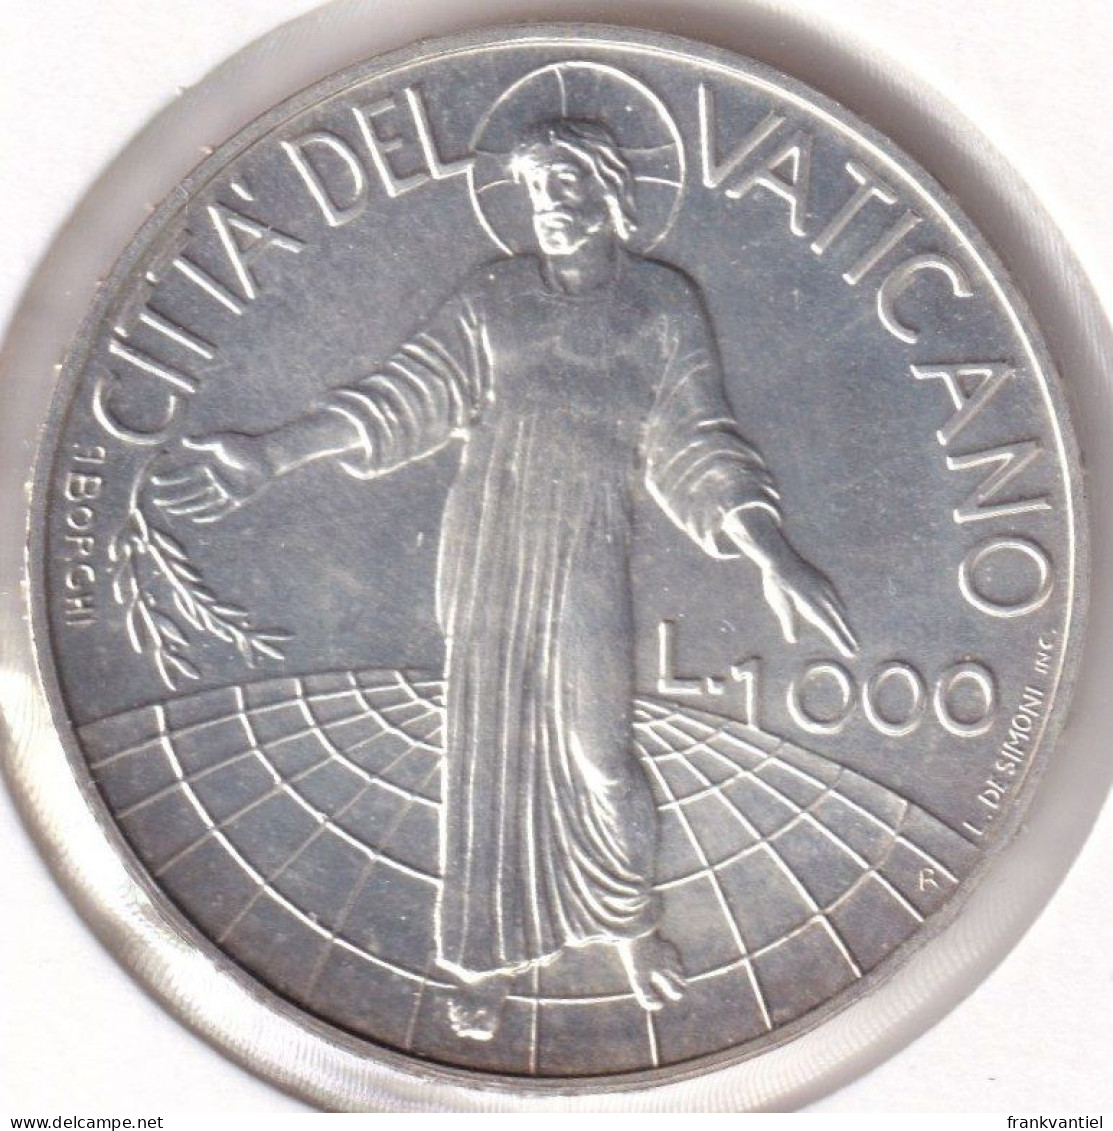 Vatican City KM-300 1000 Lire 1998 - Vatikan